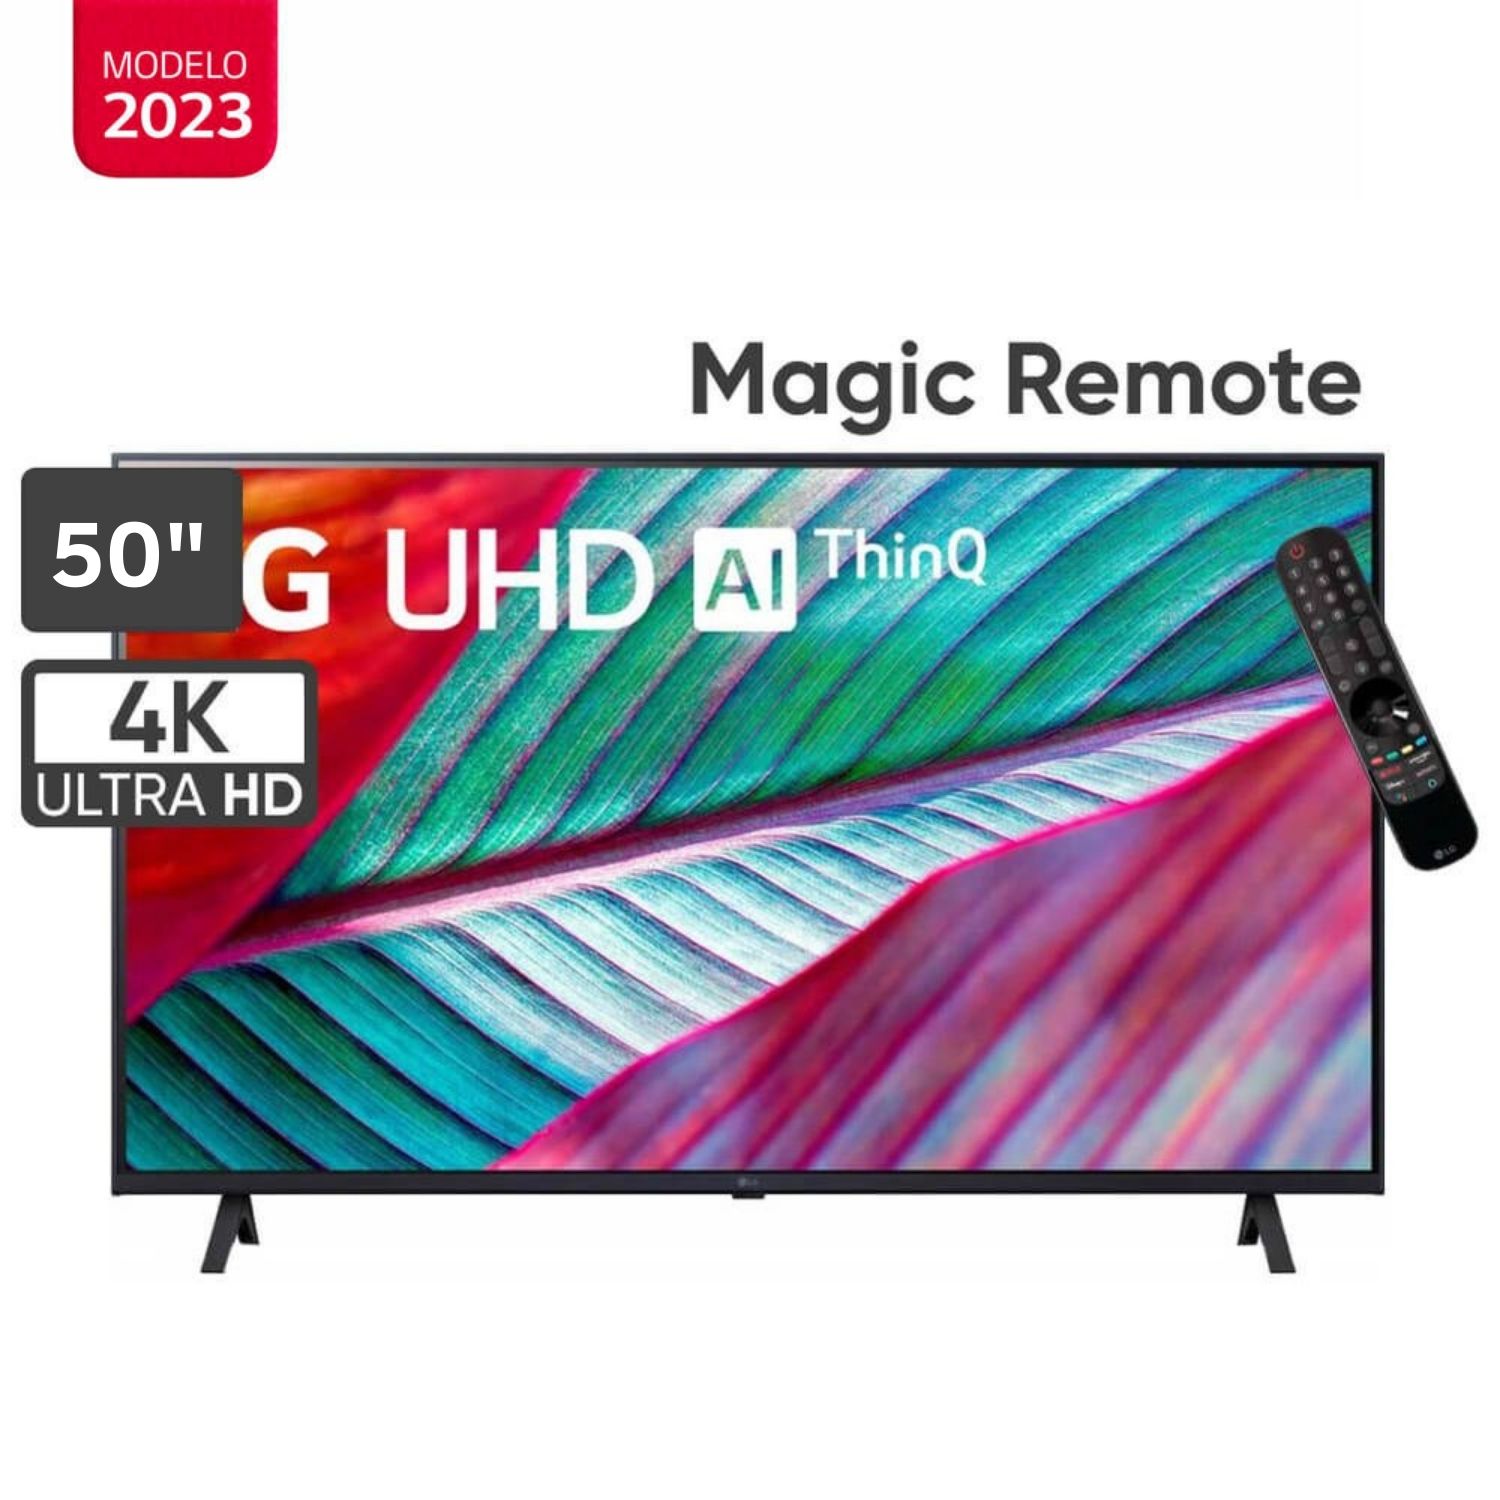 Televisor LG 50" LED Smart TV Ultra HD 4K con ThinQ AI 50UR8750PSA